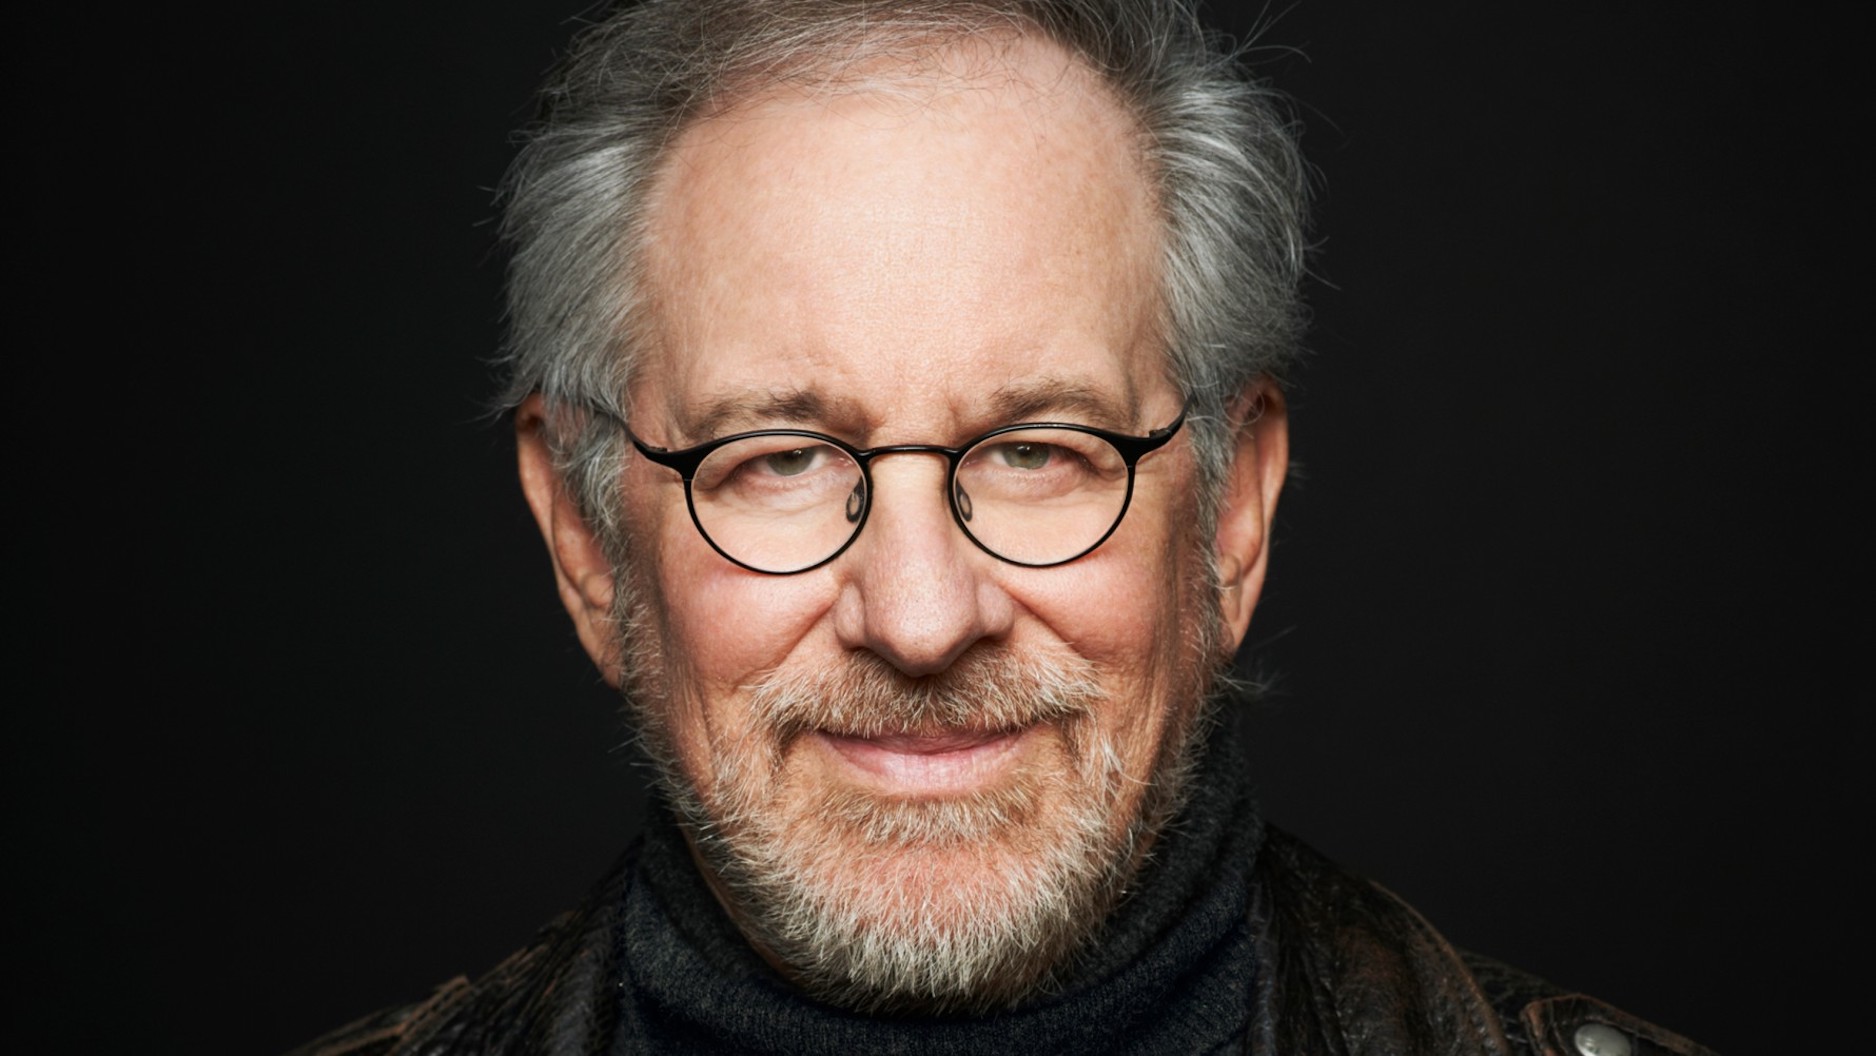 Berlinale 2023: Verleihung des Goldenen Ehrenbären an Steven Spielberg